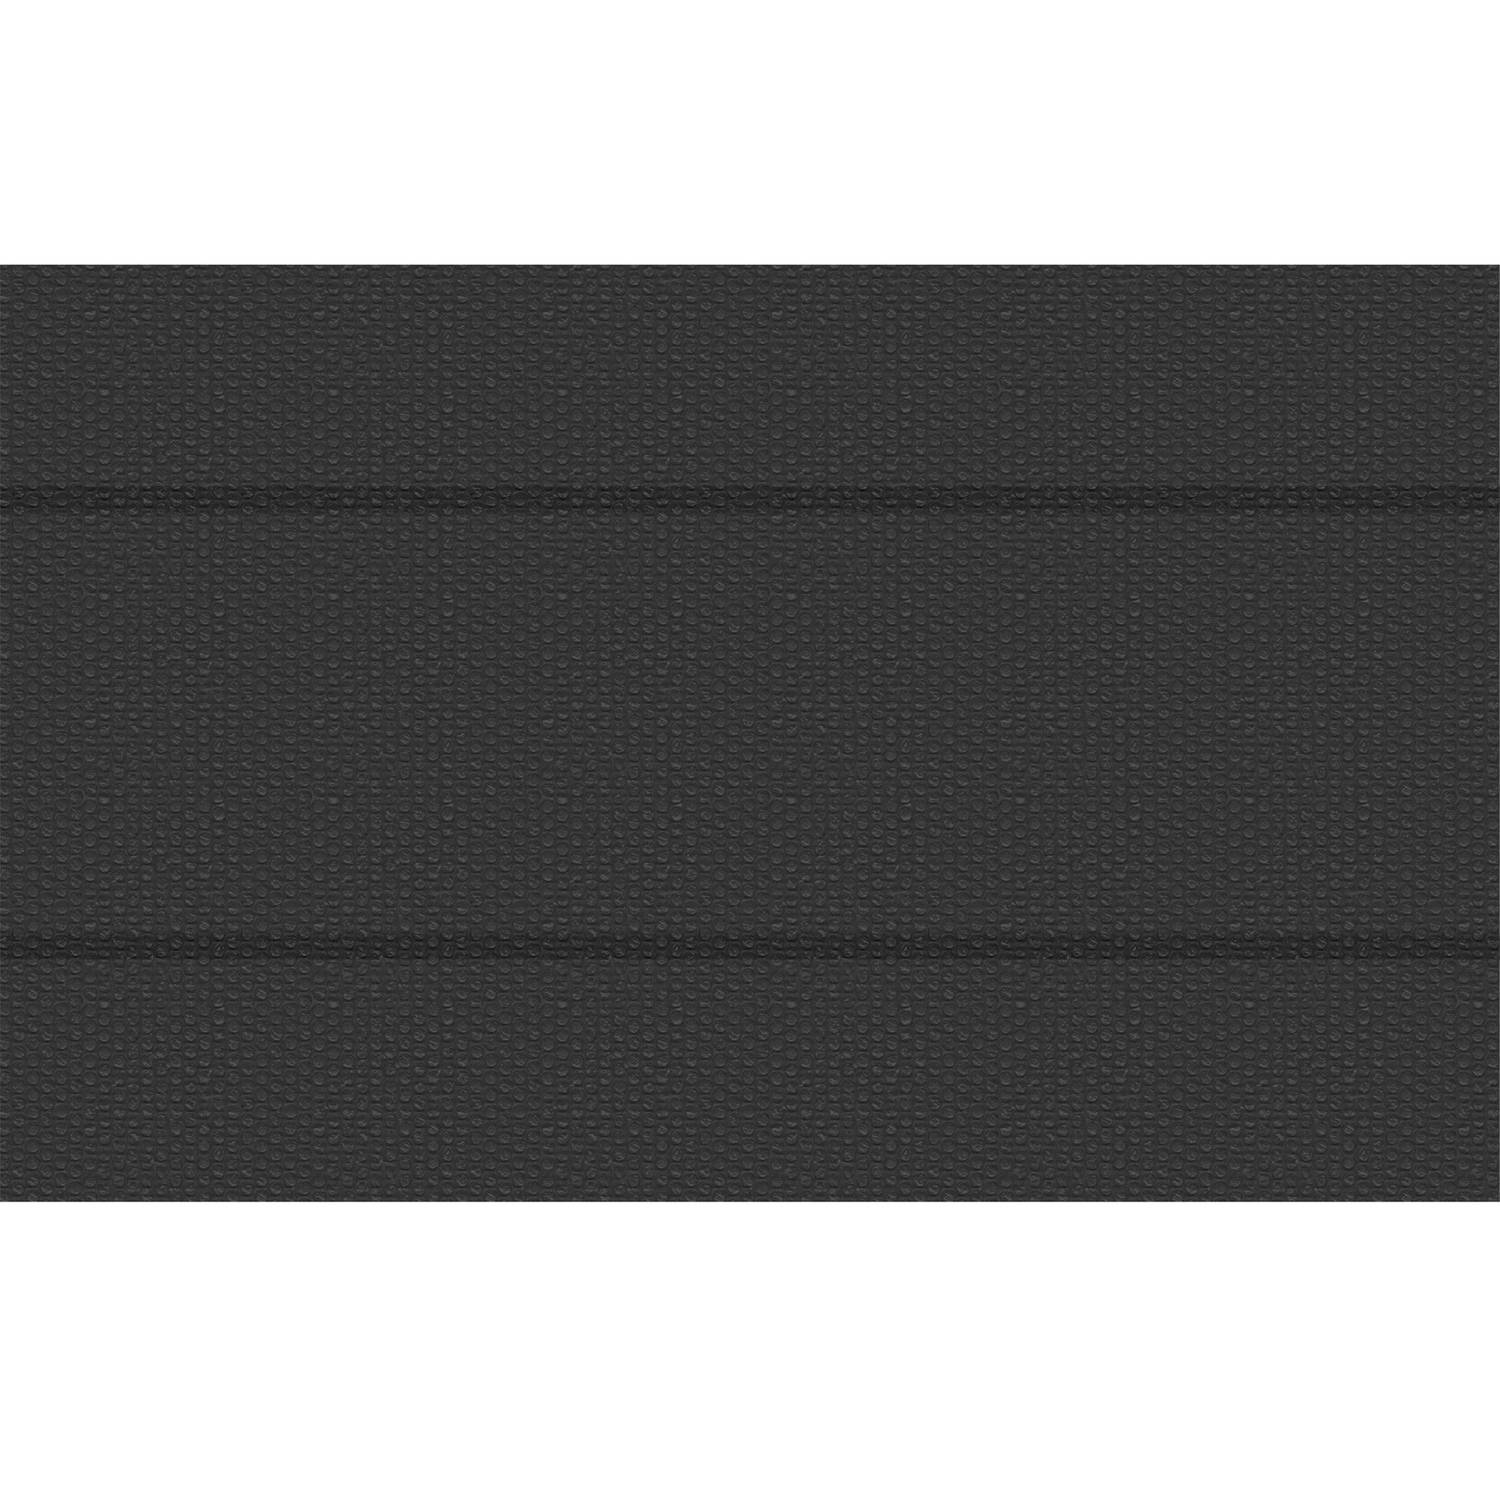 tectake - Zwembadafdekking zonnefolie zwart rechthoekig 500 x 800 cm - 403099